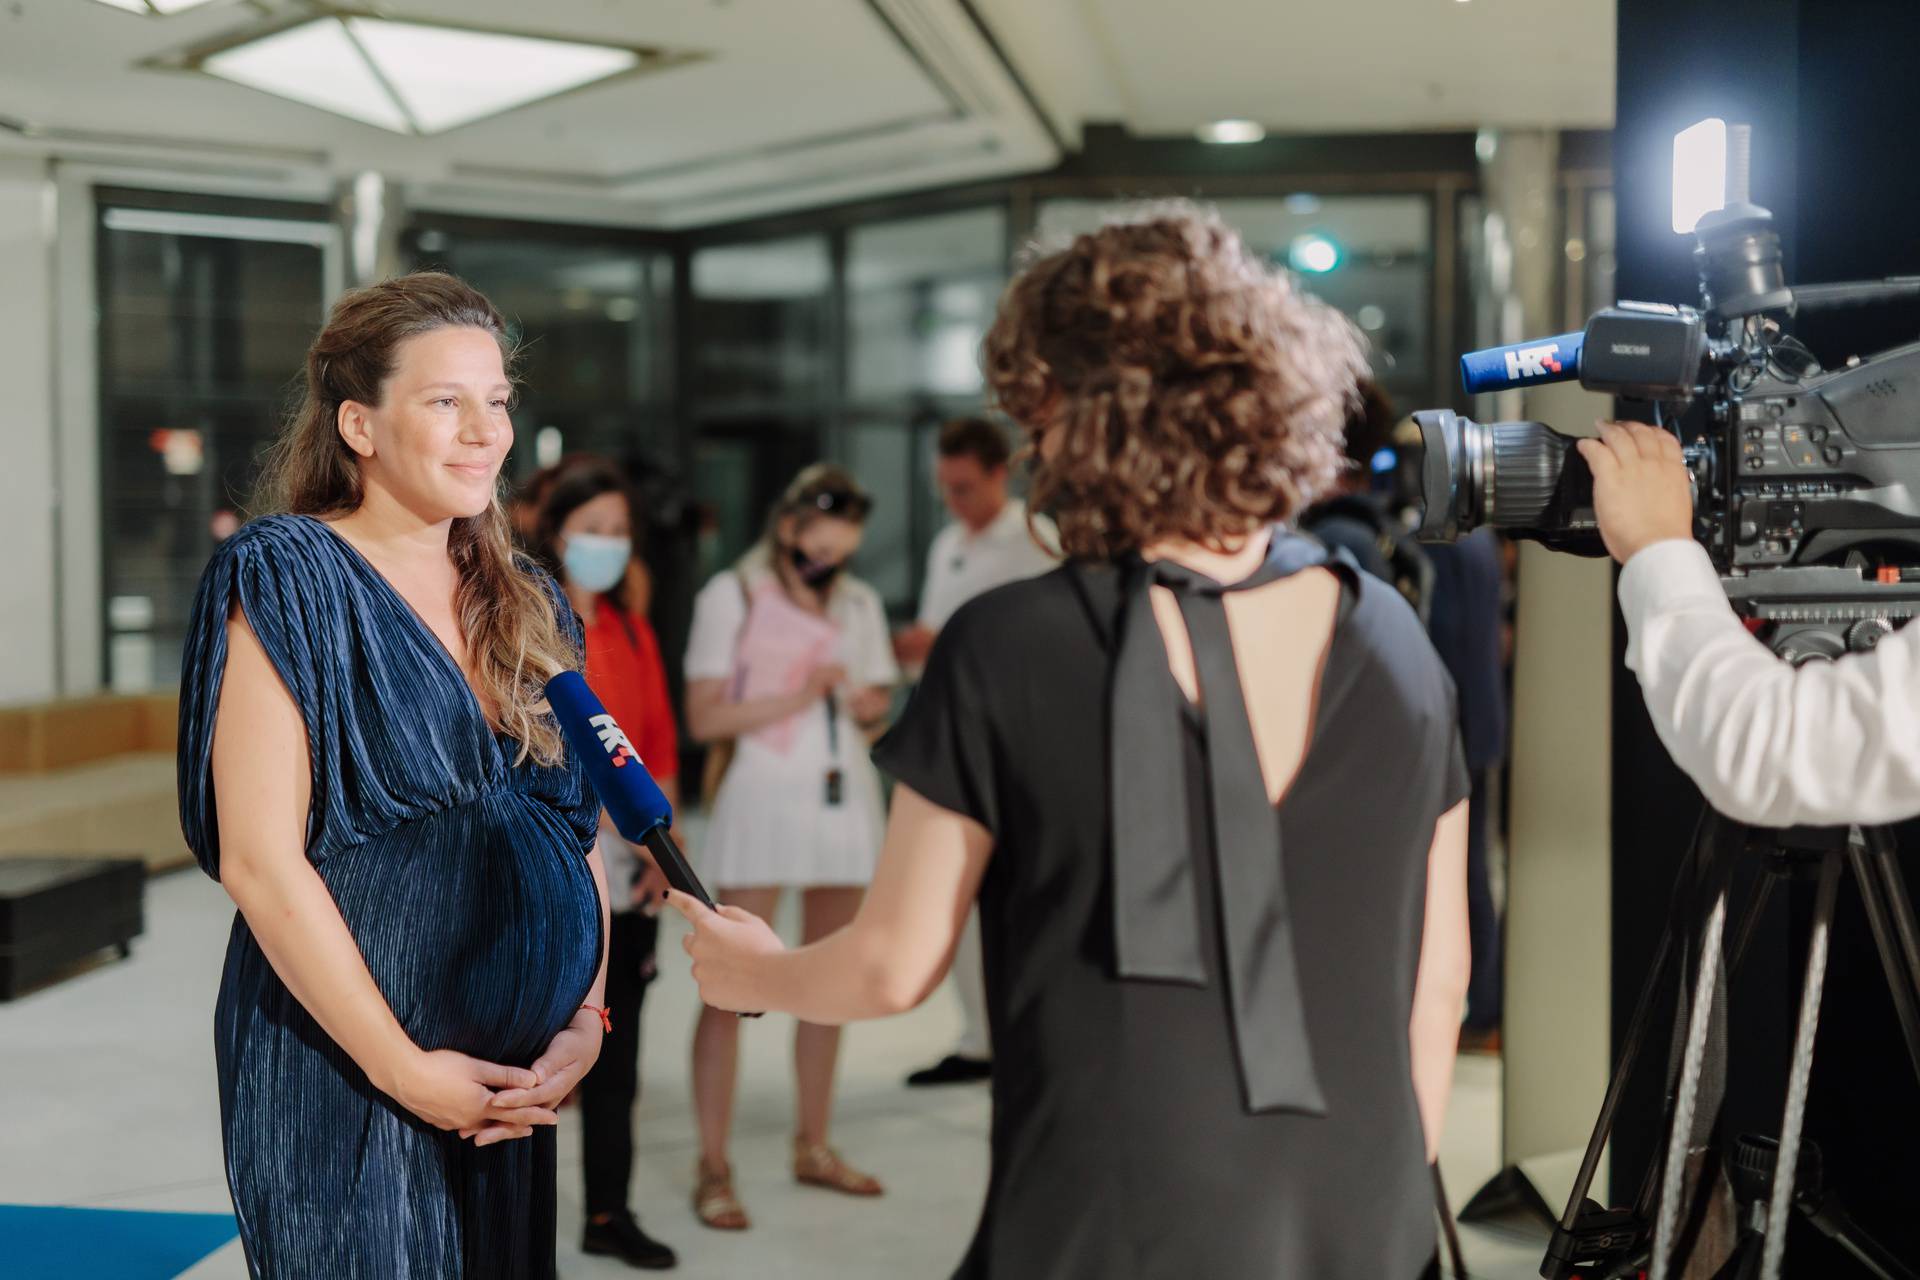 Hrvatski film 'Murina' osvojio nagradu u Cannesu: Redateljica rodila dan uoči proglašenja